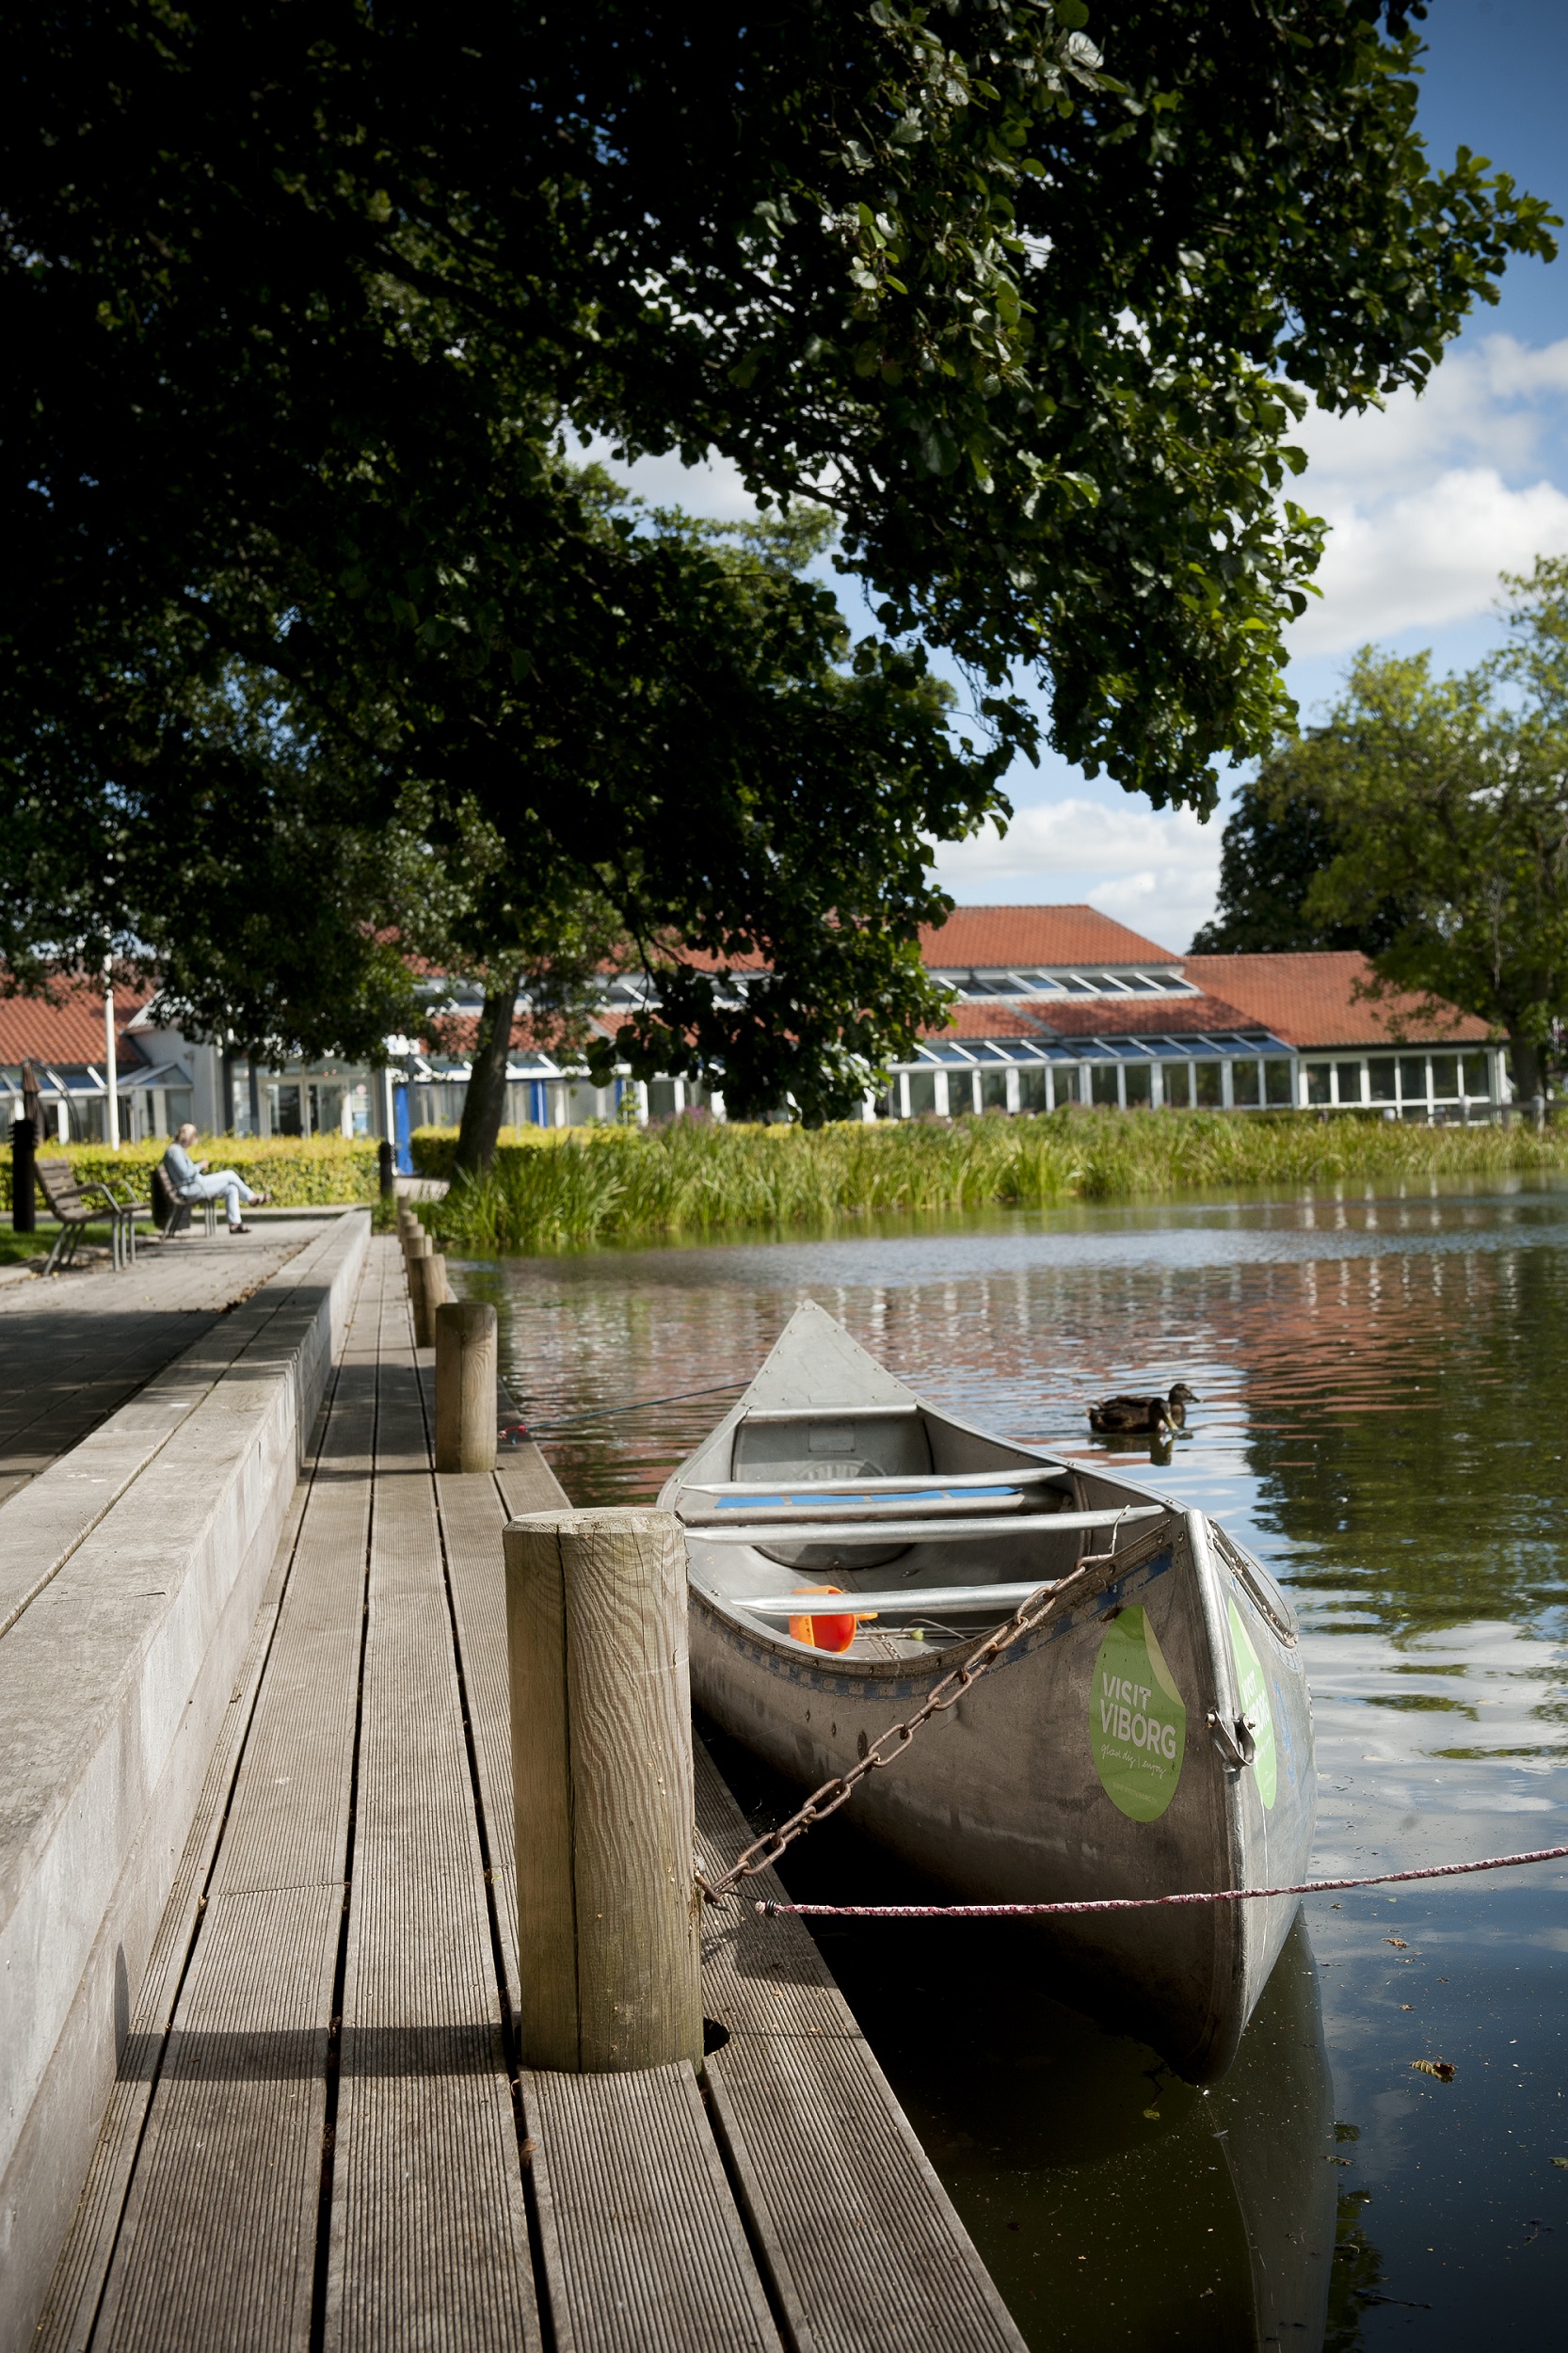 Soak Afspejling tilgivet Golf Hotel Viborg | Golf i Midtjylland | NordicGolfers.com